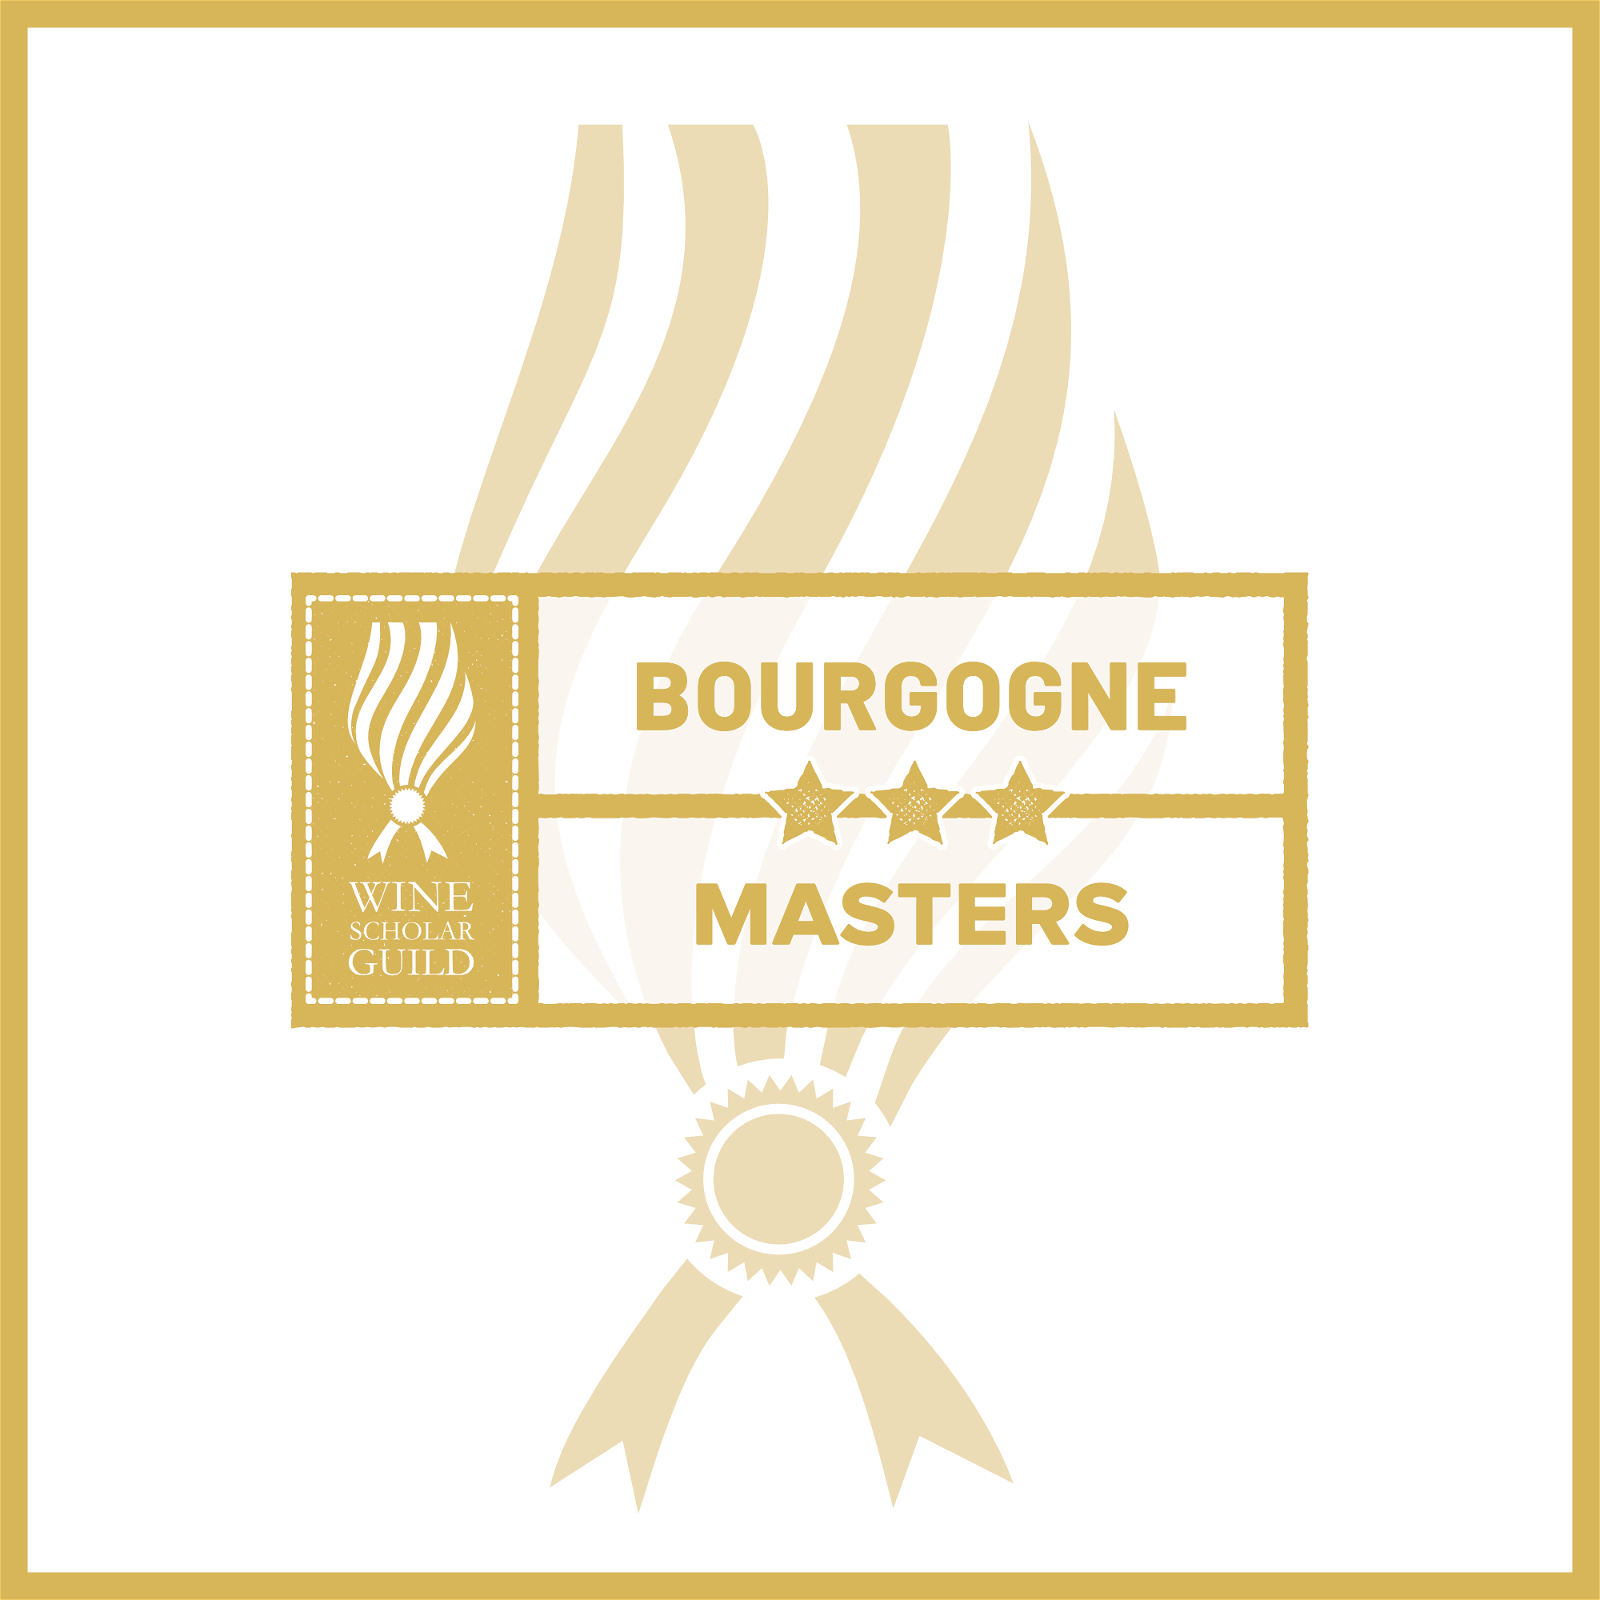 Bourgogne Masters Product